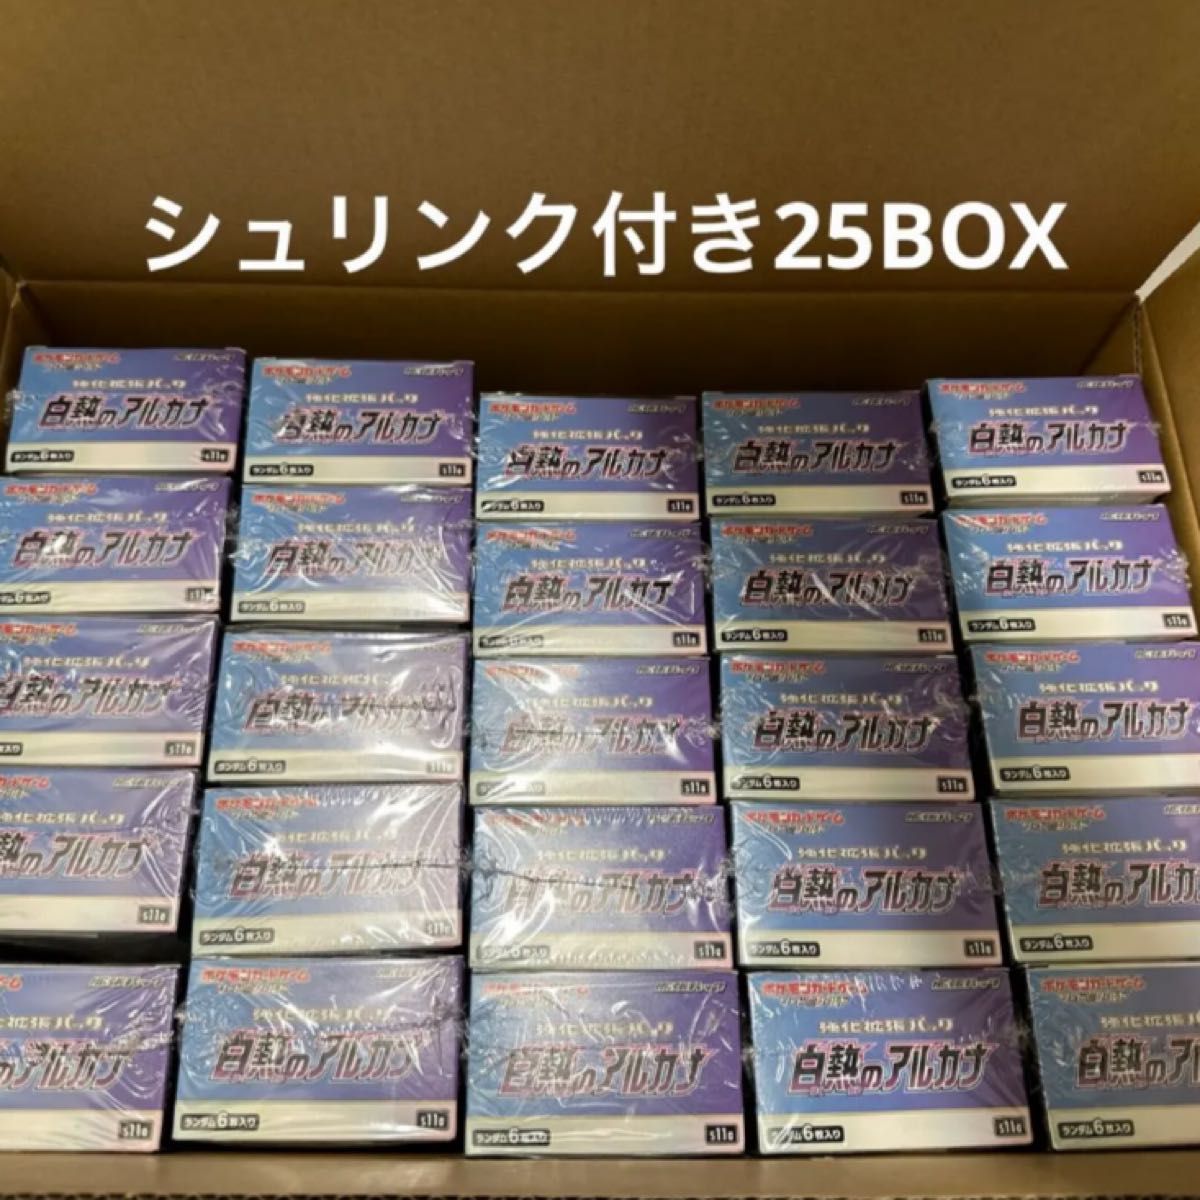 白熱のアルカナ 25BOX 25箱